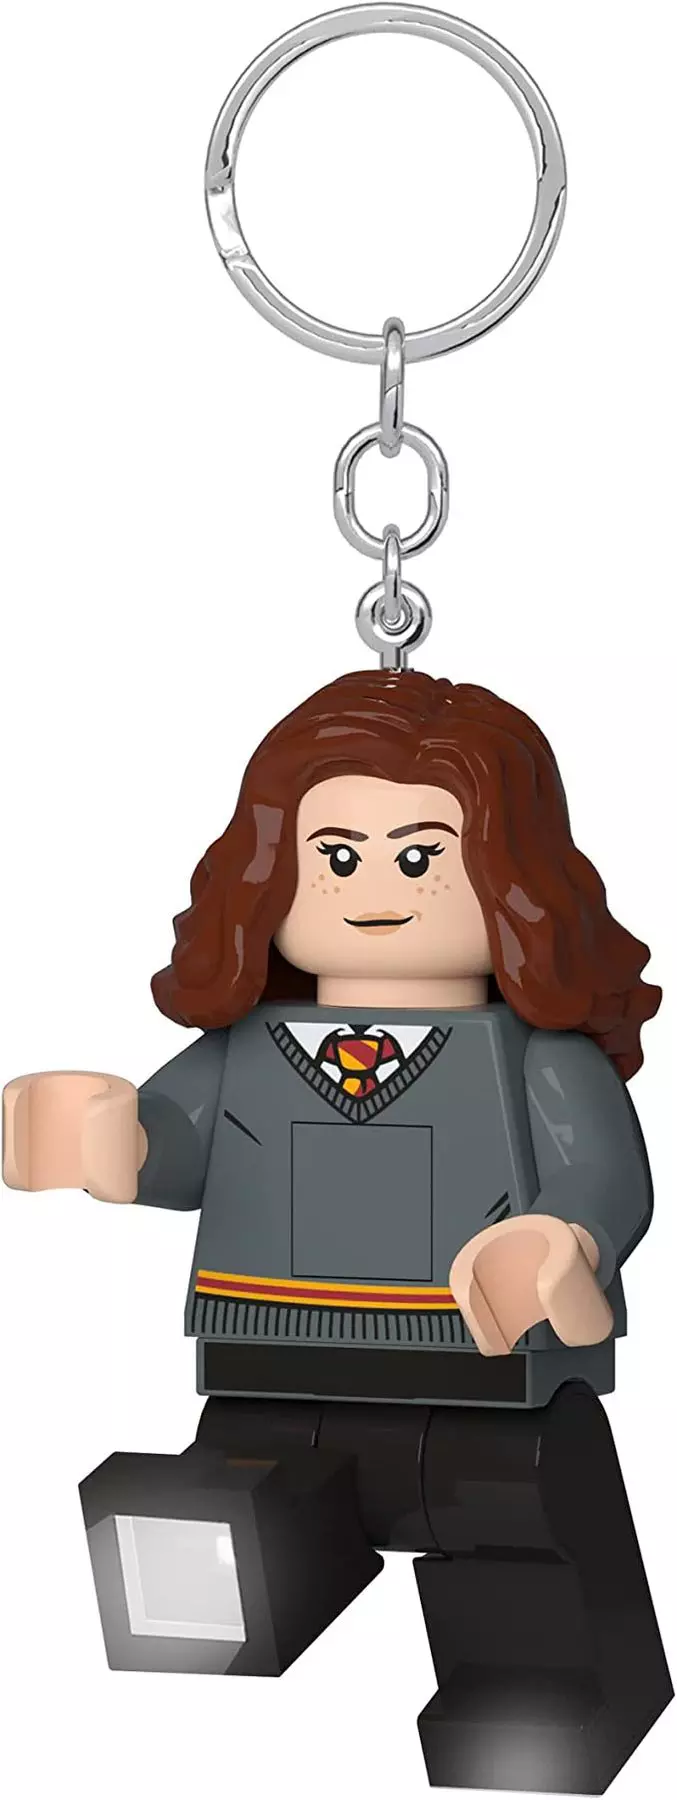 Lego Led Keychain Harry Potter Hermione